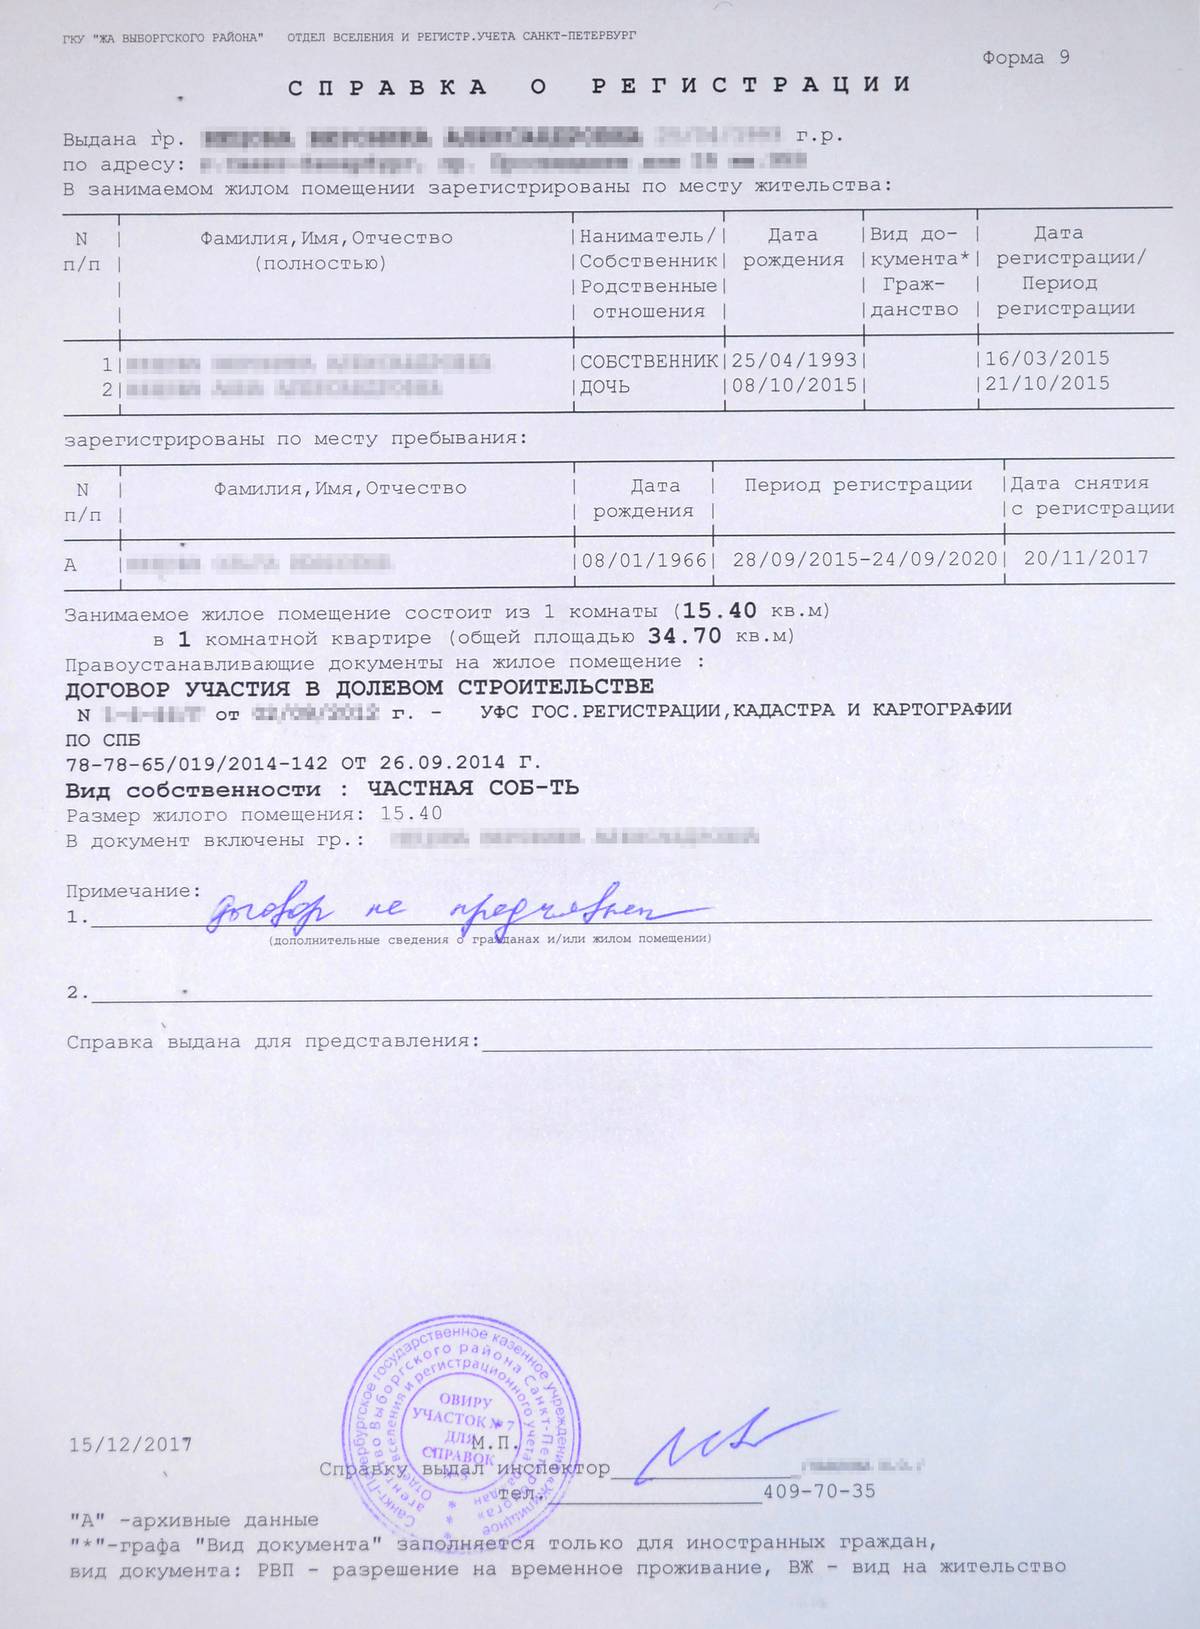 Справка о регистрации и составе семьи по форме № 9, которую выдают в Санкт-Петербурге. В другом регионе документ может называться и выглядеть по-другому